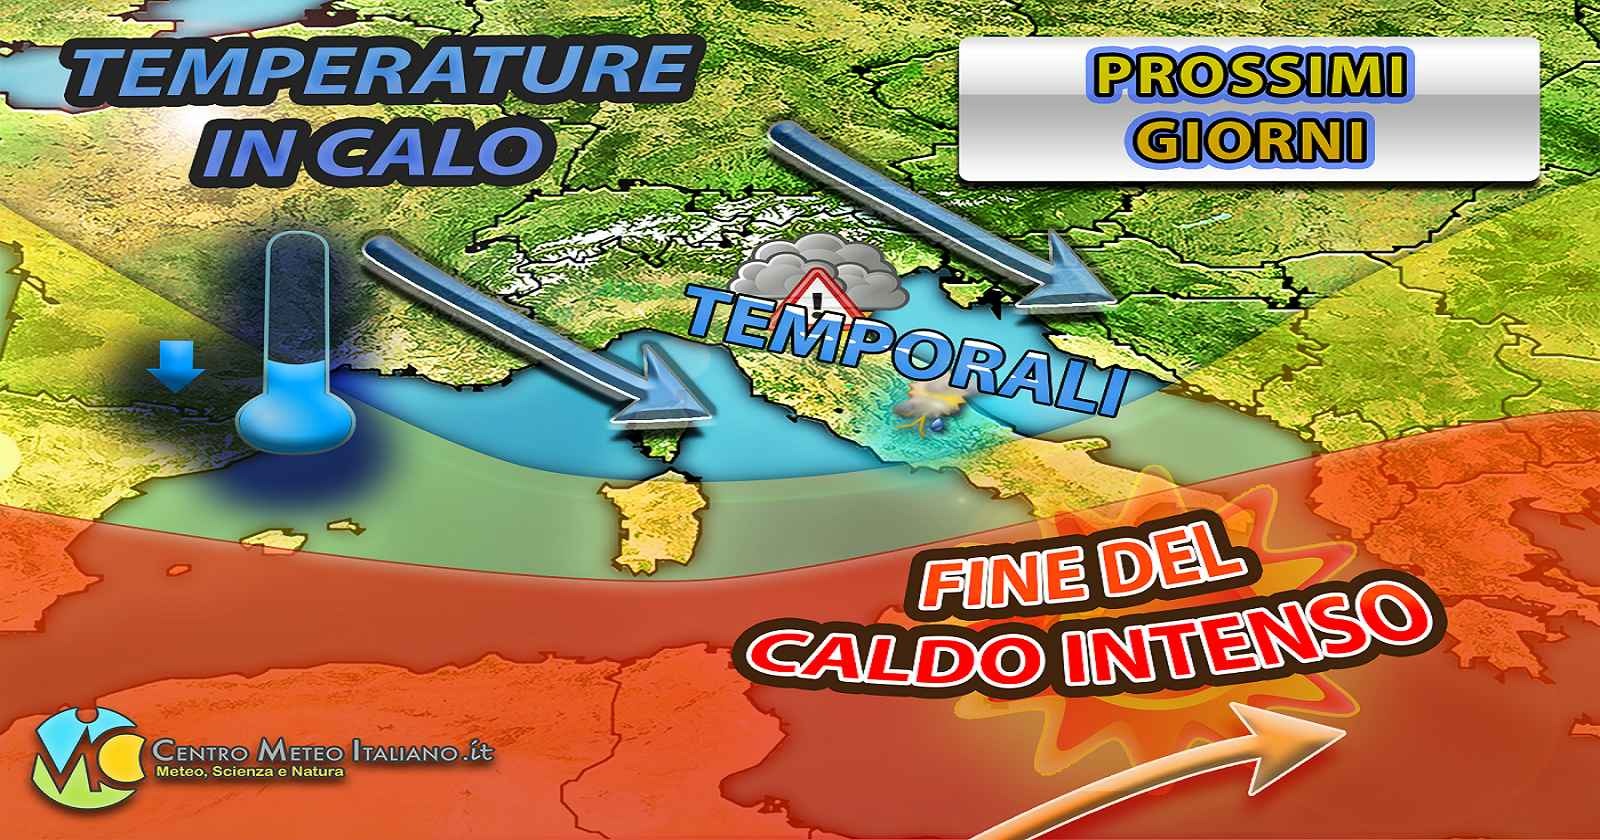 Crollo termico in Italia nelle prossime ore, fino a 15 gradi in meno